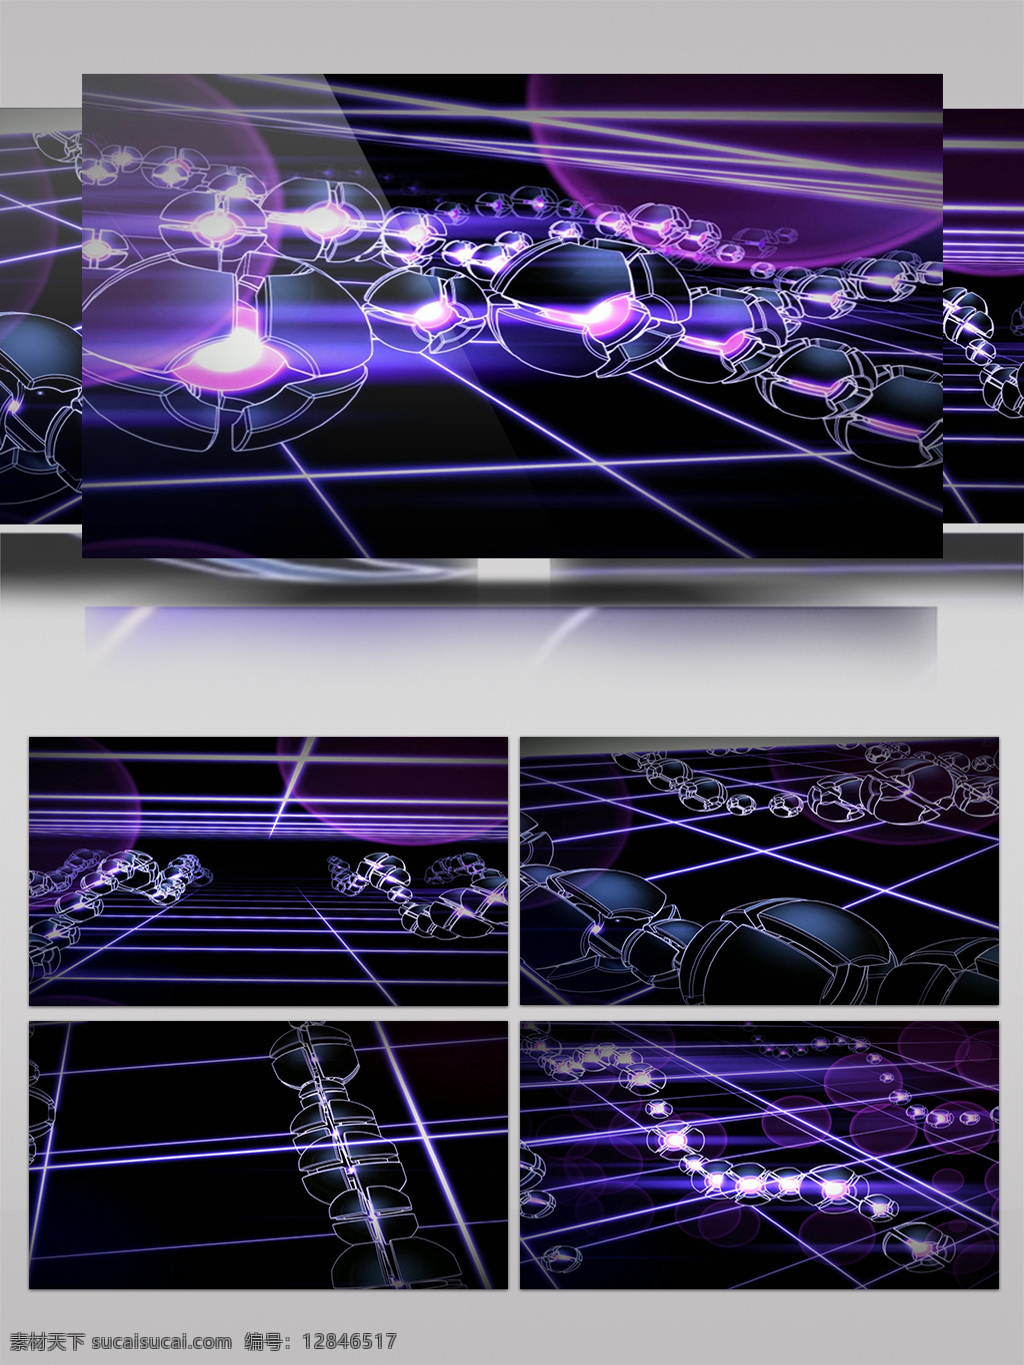 梦幻 紫色 神秘 背景 视频 高清视频素材 视频素材 动态视频素材 紫色神秘 梦幻线条 舞台